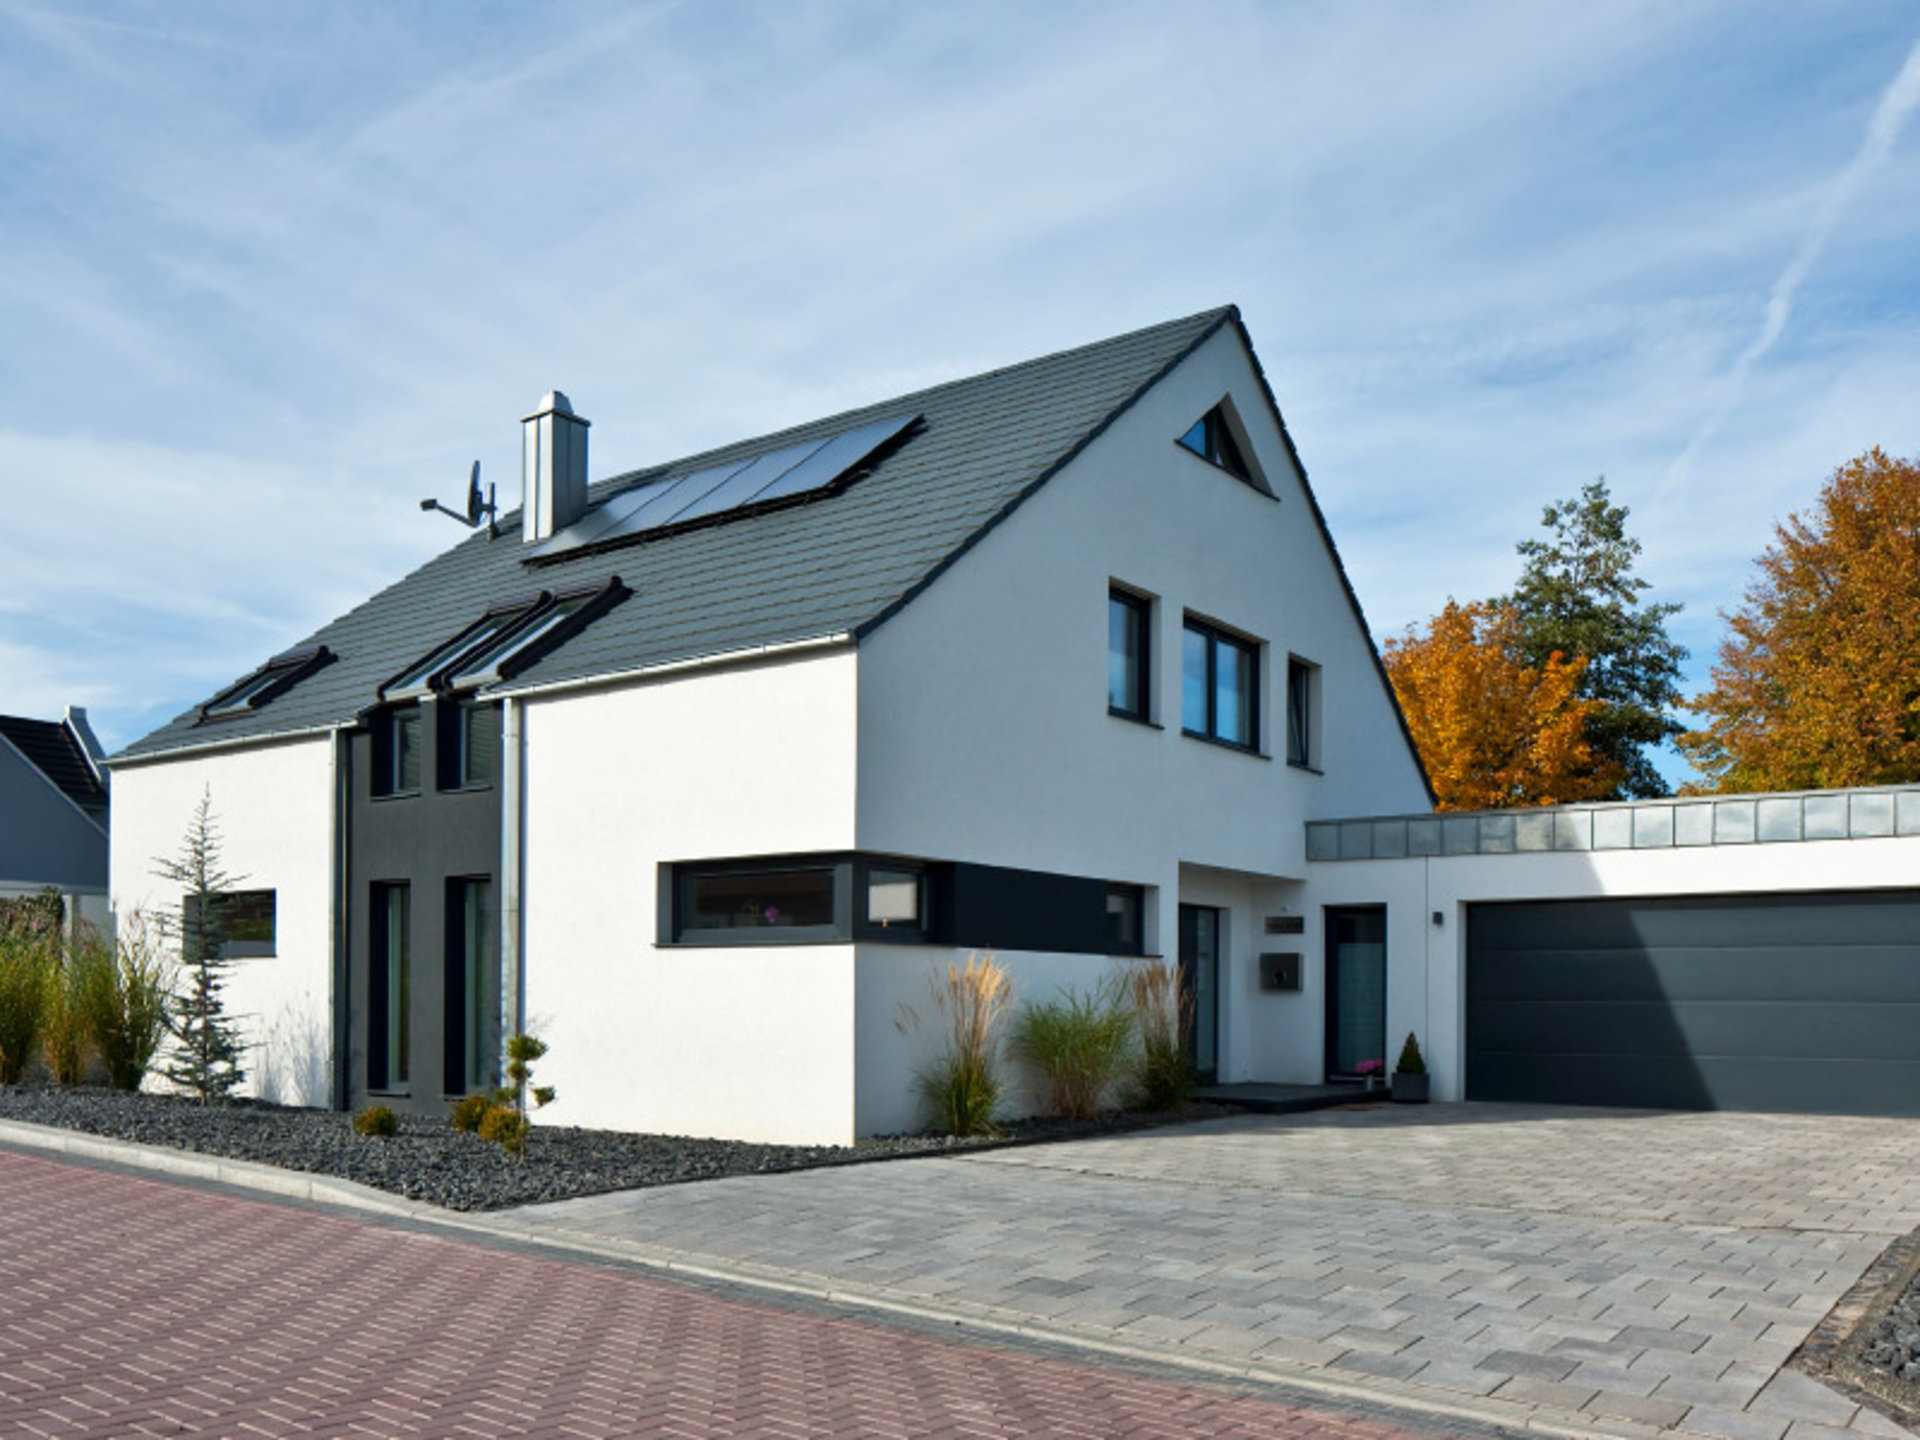 Haus Götze - ein modern-puristische Stilkonzept für ein klares Statement. (Foto: BAUMEISTER-HAUS)